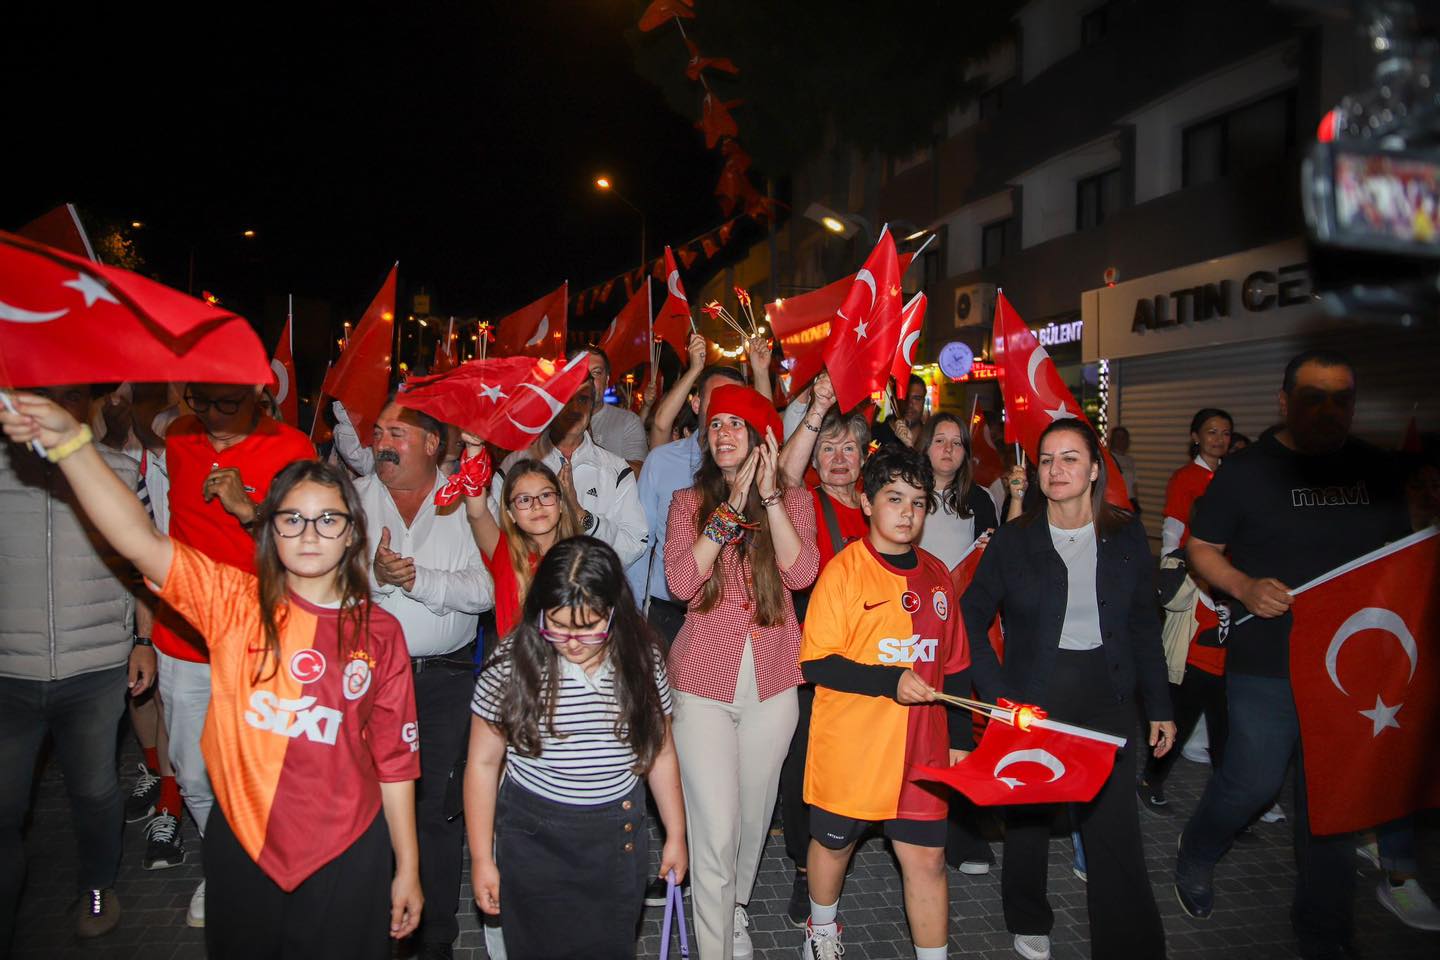 İzmir Çeşme'de 19 Mayıs coşkusu yaşandı